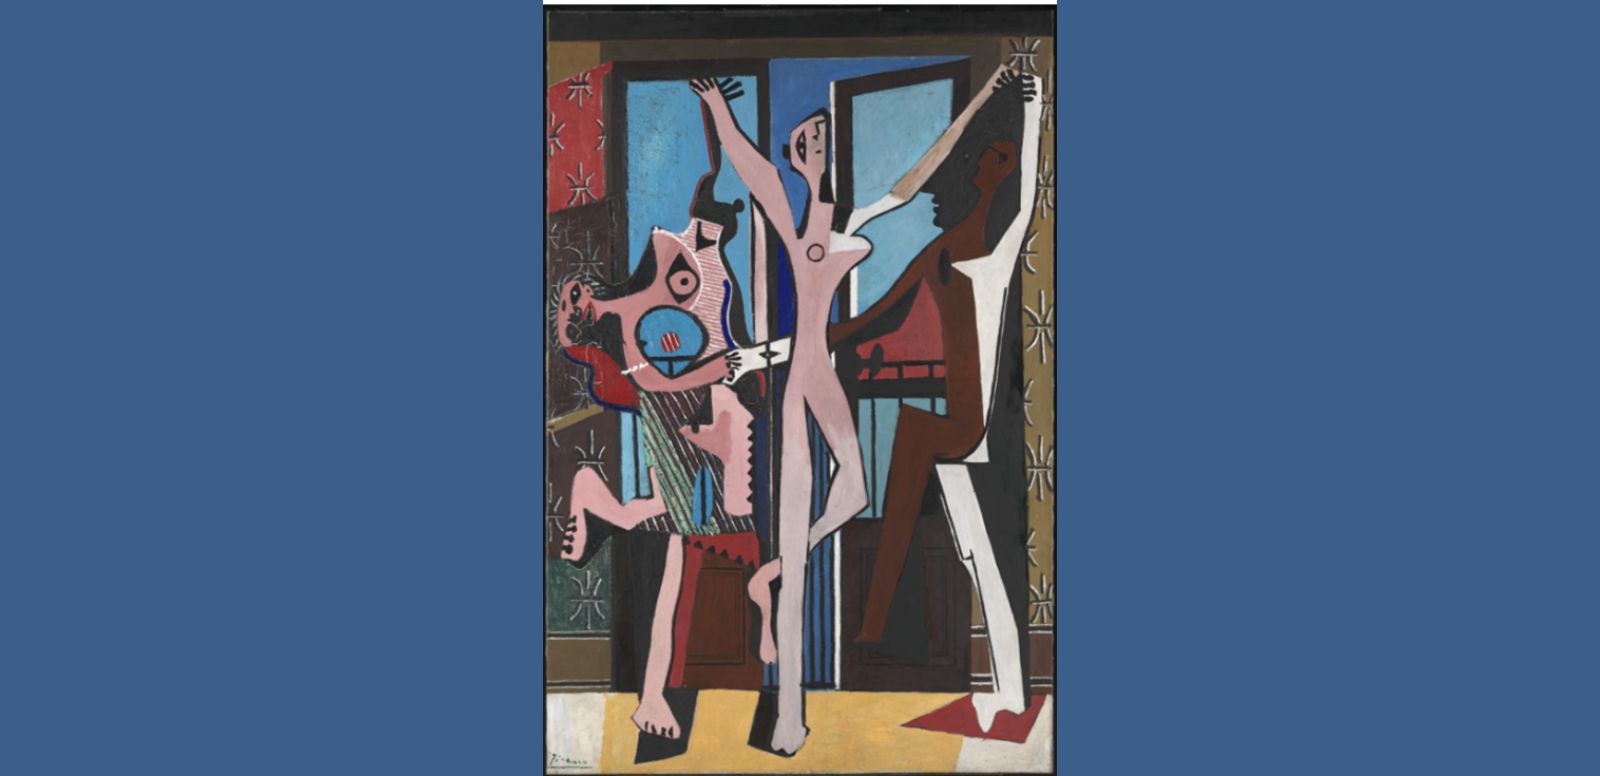 Pablo Picasso, “La danza” 1925